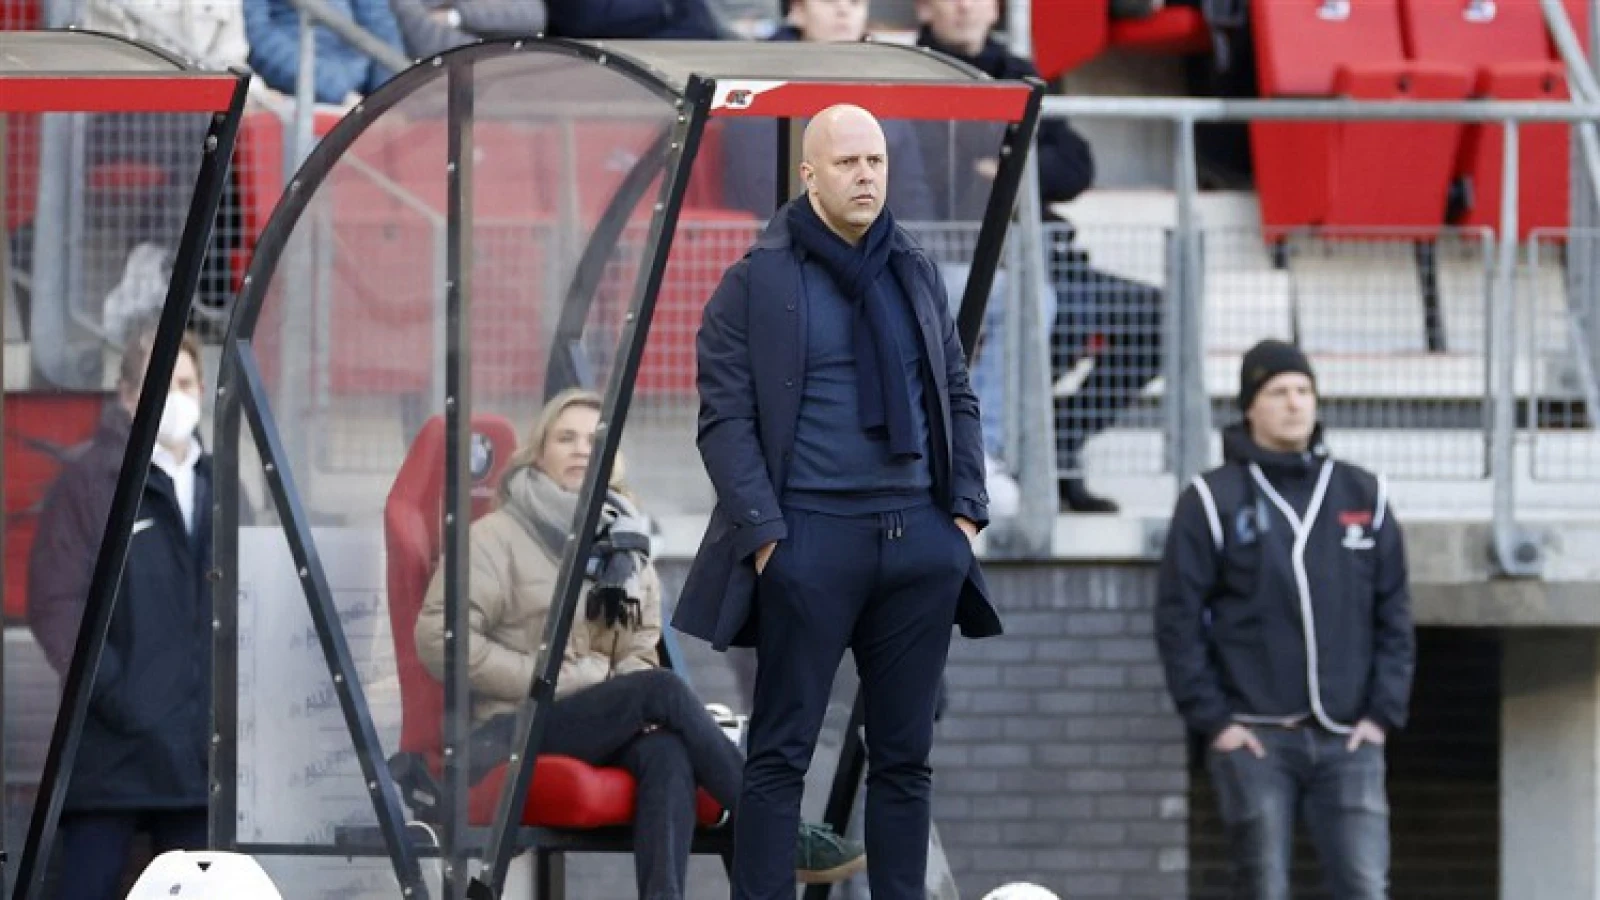 LIVESTREAM 13:45 | Persconferentie Arne Slot in aanloop naar thuiswedstrijd tegen FC Groningen